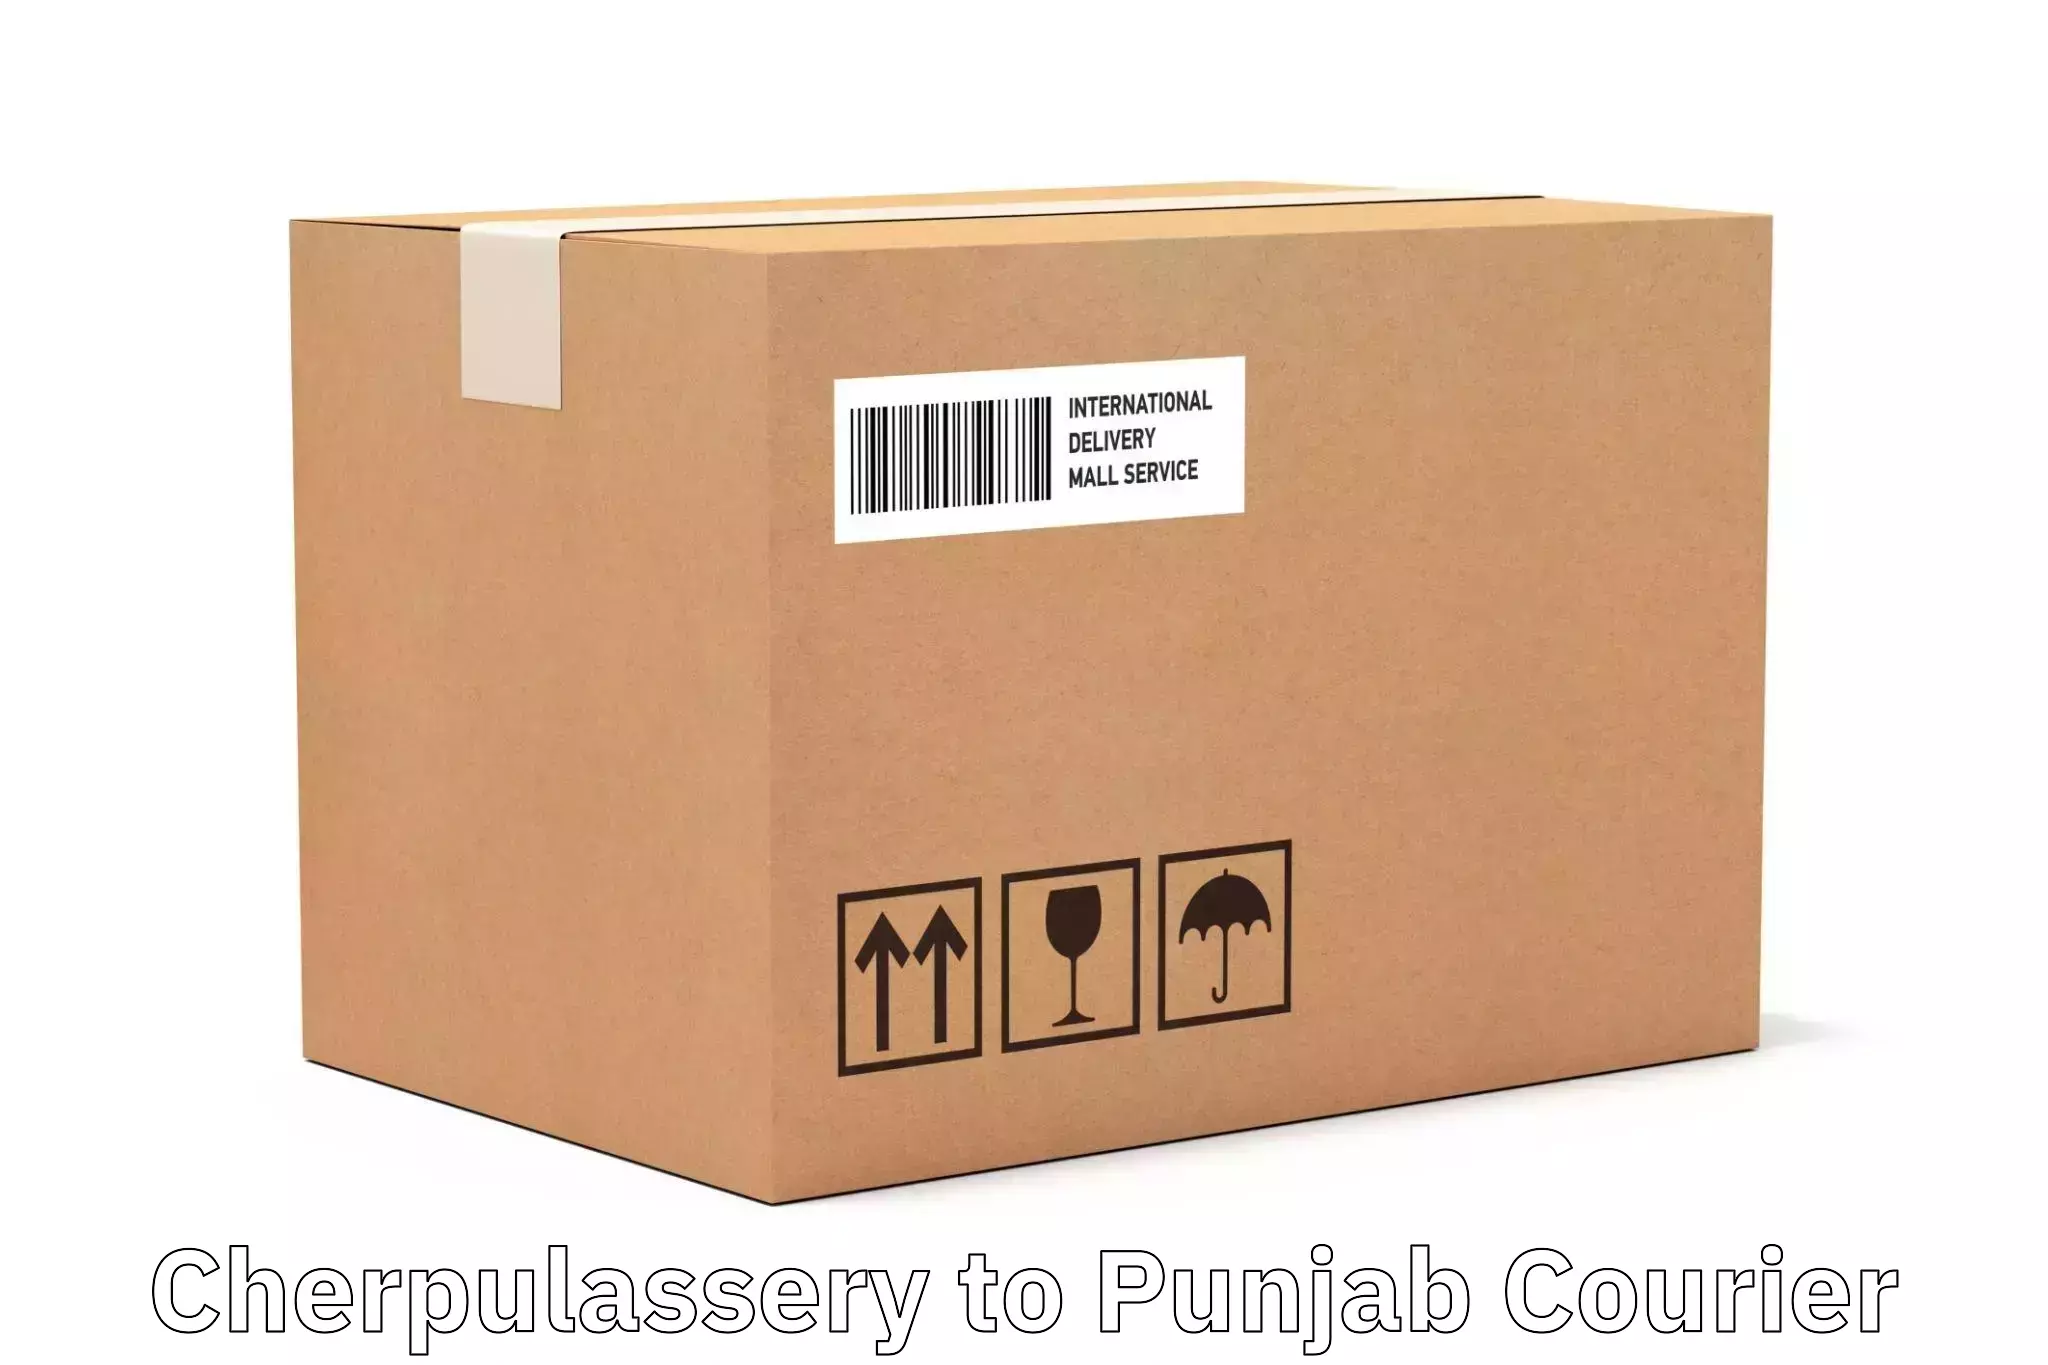 Custom courier packaging Cherpulassery to Mansa